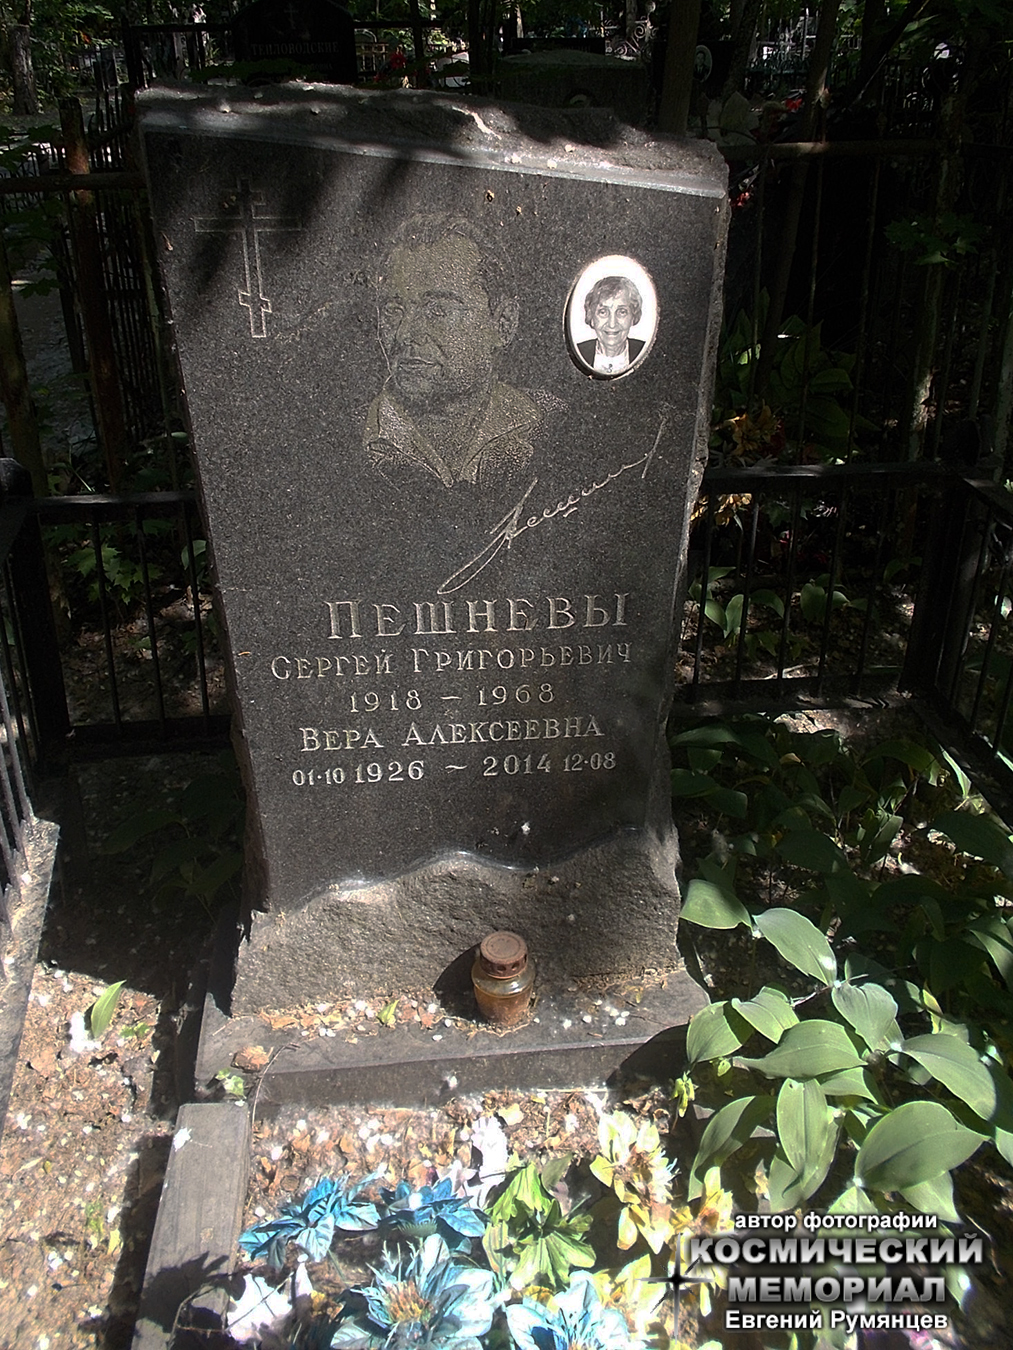 г. Москва, Кузьминское кладбище (уч. № 20). Надгробия на могилах С.Г. Пешнева и его супруги (июнь 2019 года)